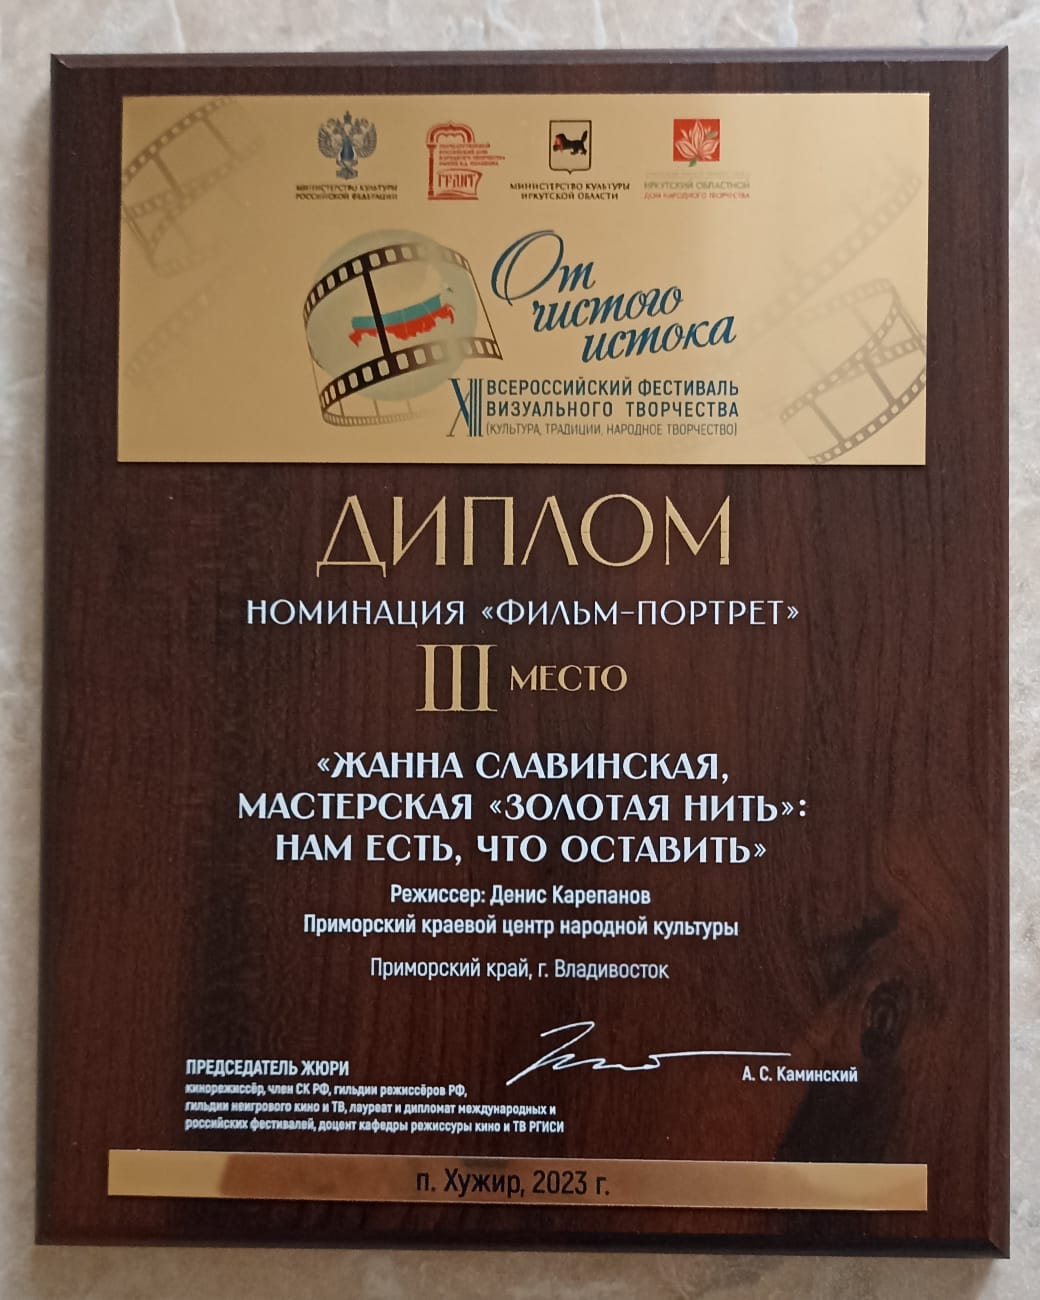 Фильм о вышитой карте Приморья стал победителем в фестивале "От чистого истока"